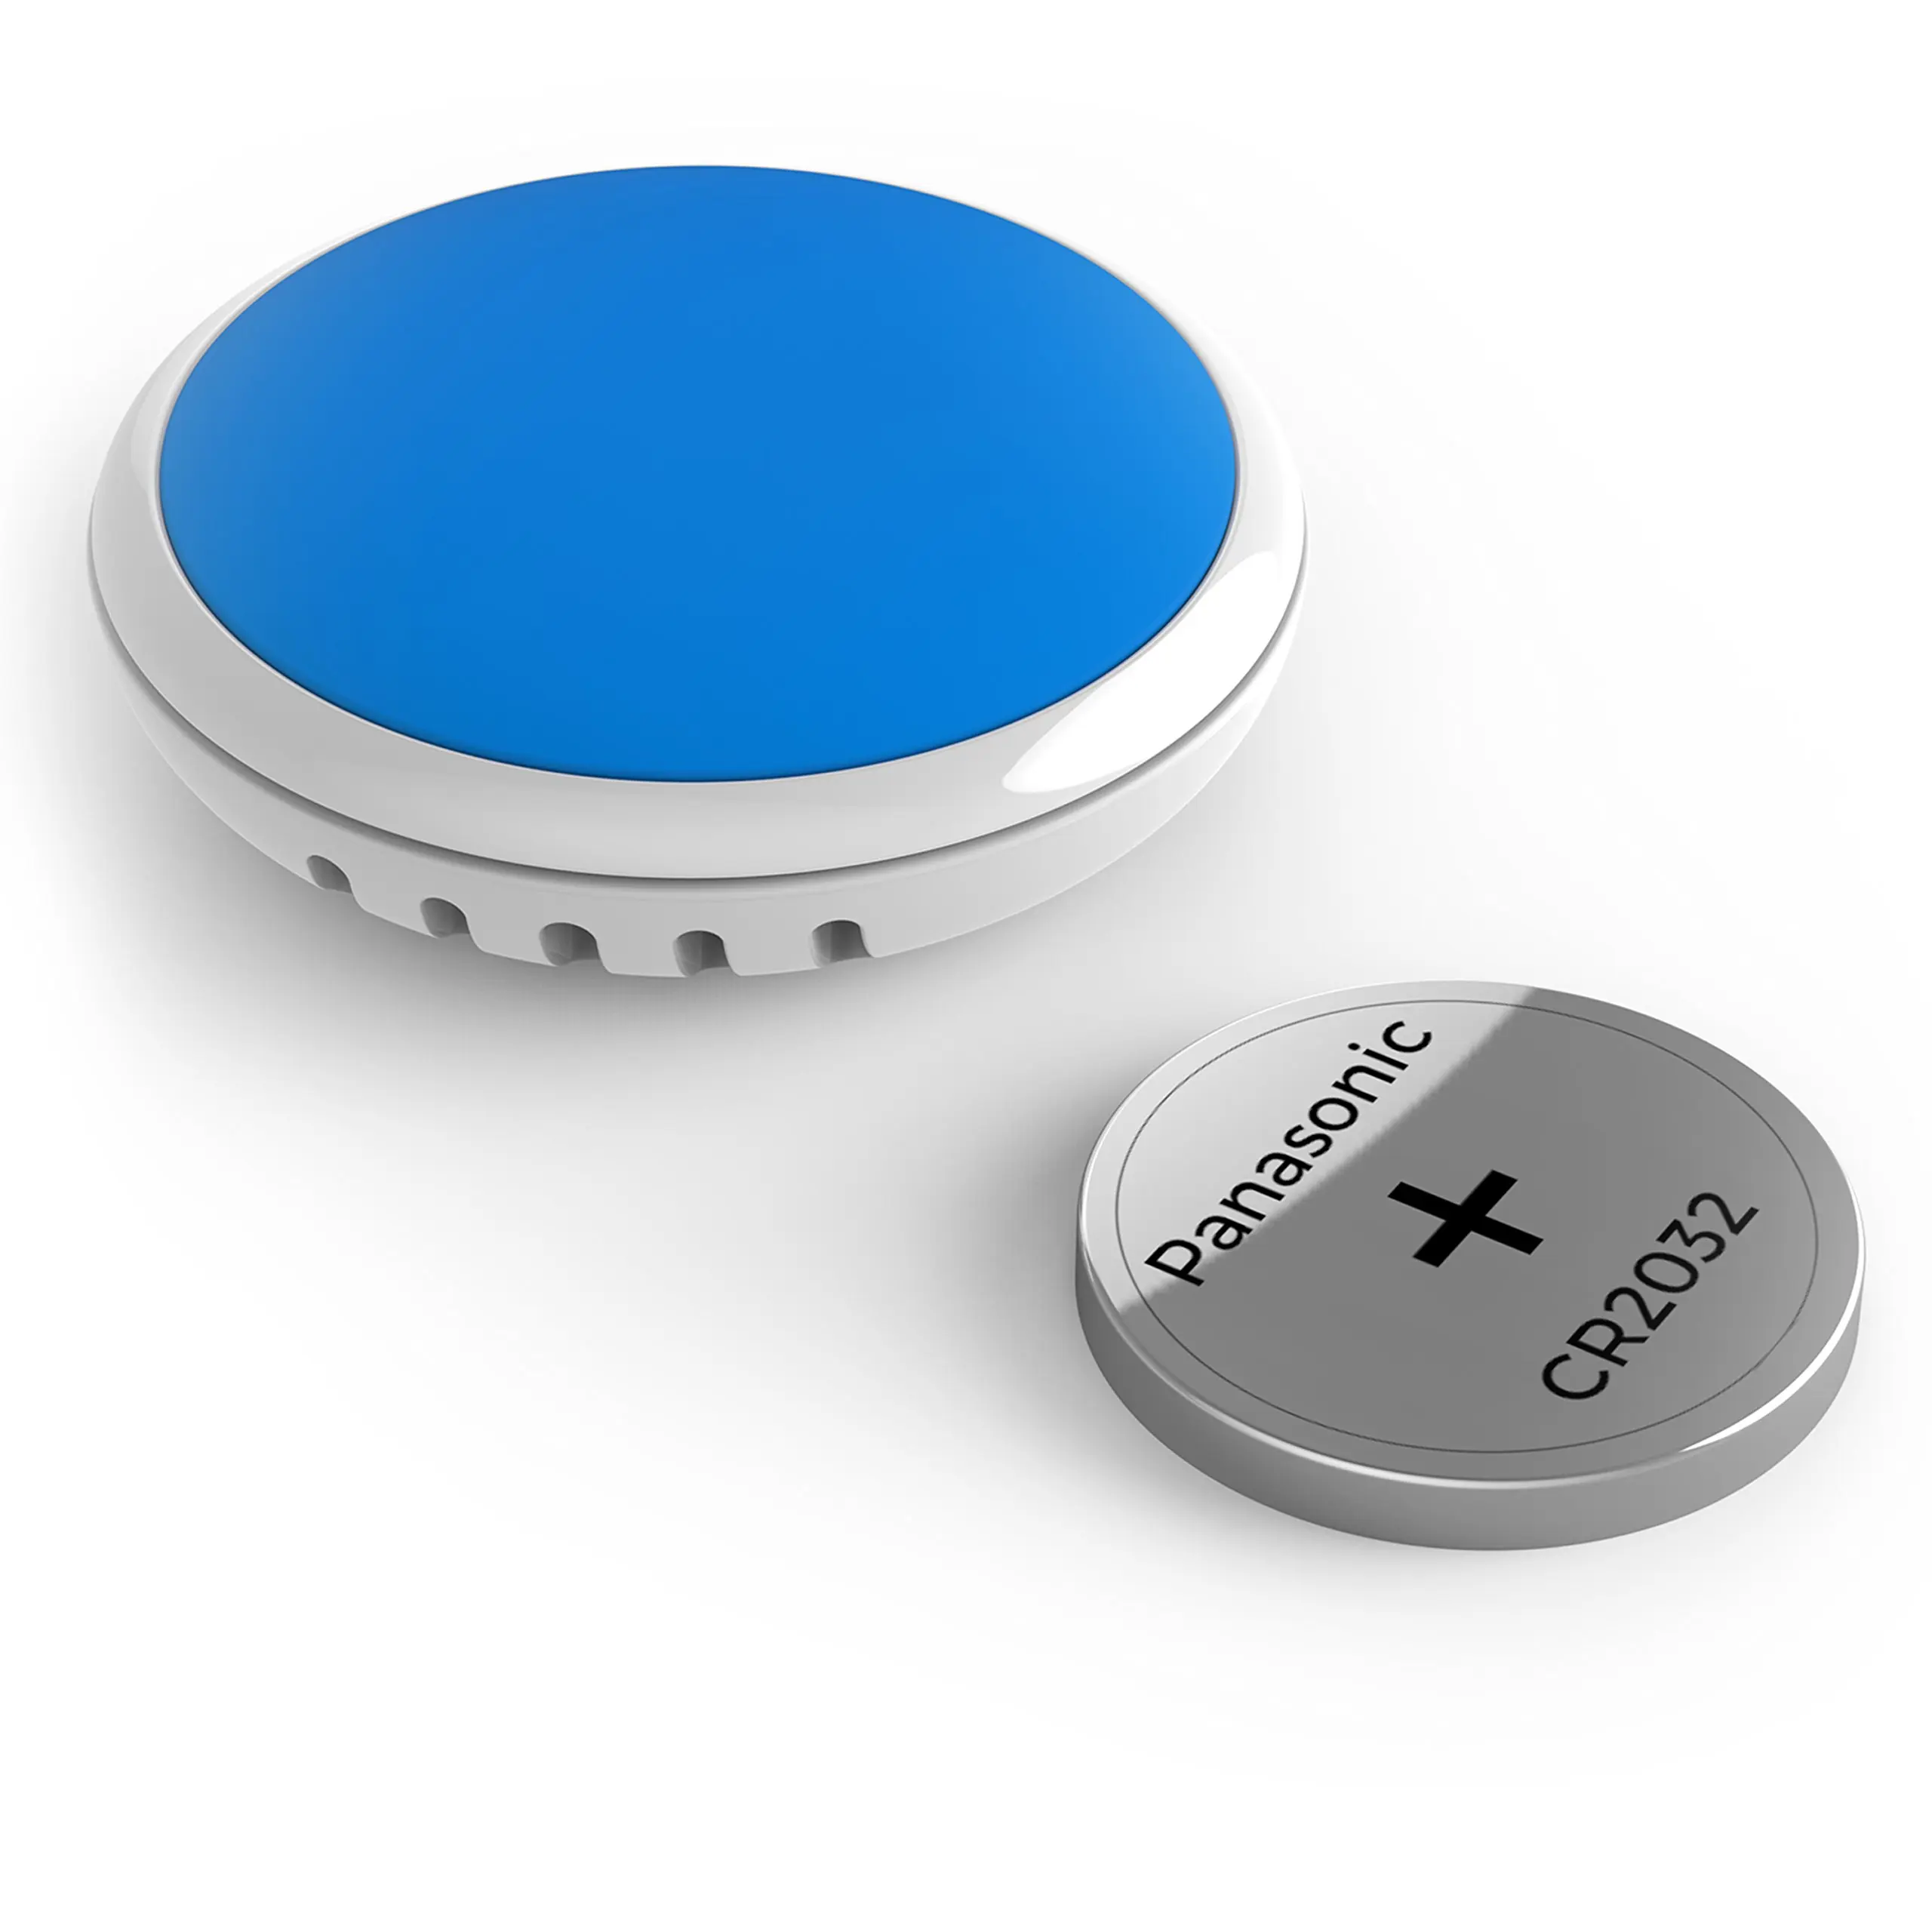 Cheap Bluetooth Temperature Sensor, find Bluetooth Temperature Sensor